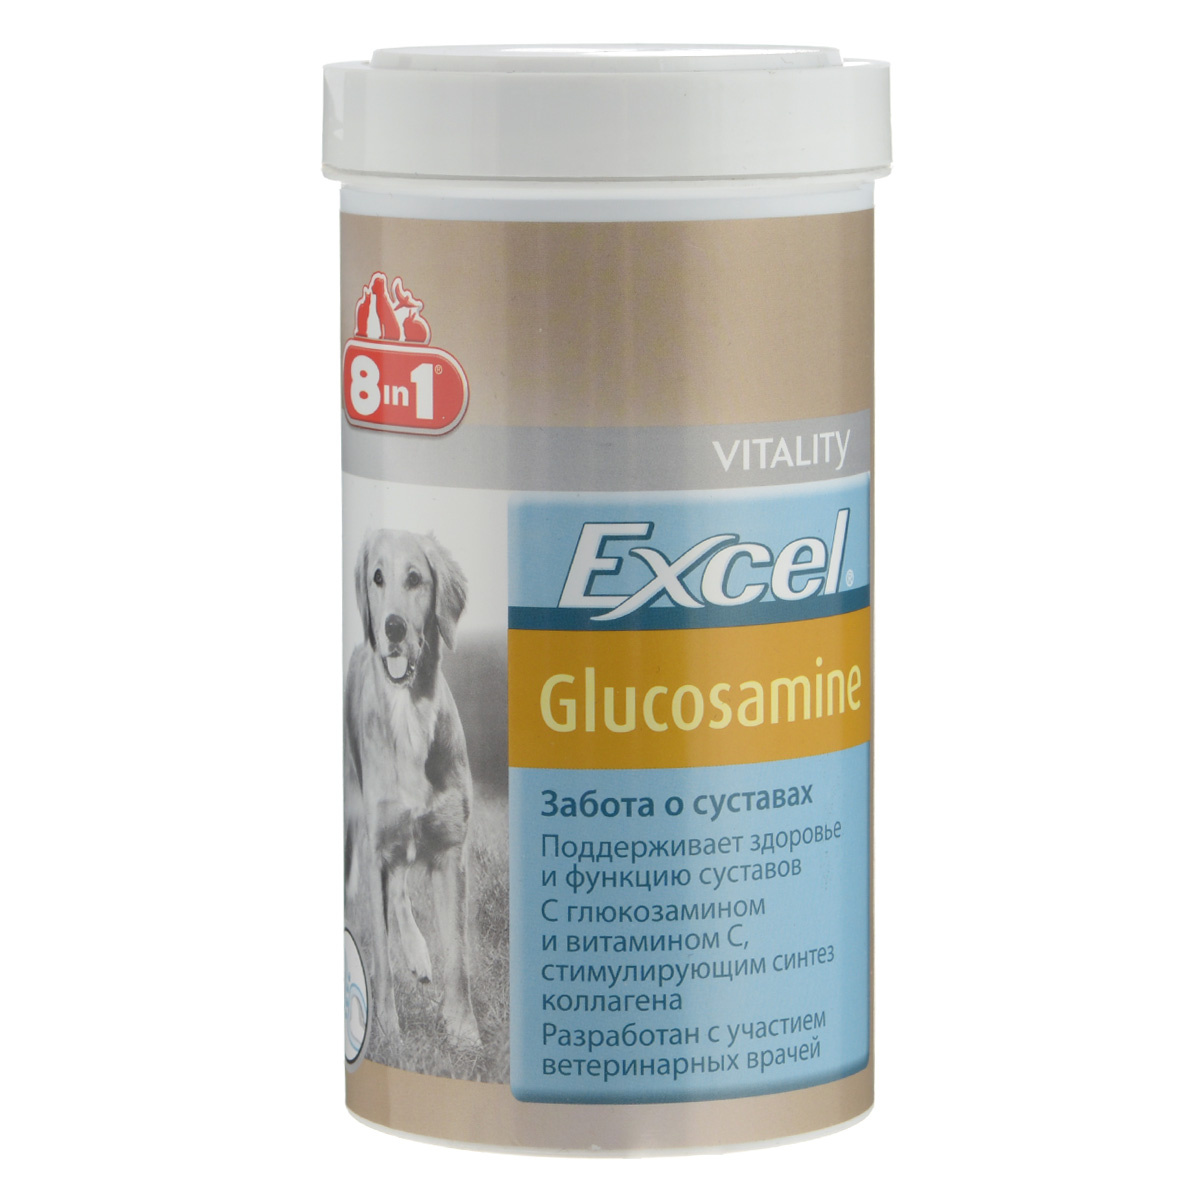 Витамины 8 в 1 для собак купить. Excel 8 in 1 для собак Glucosamine. Витамины excel 8 in 1 для собак глюкозамин. Эксель глюкозамин для собак 8 в 1глюкозами. 8 В 1 эксель глюкозамин д/собак 55 табл.